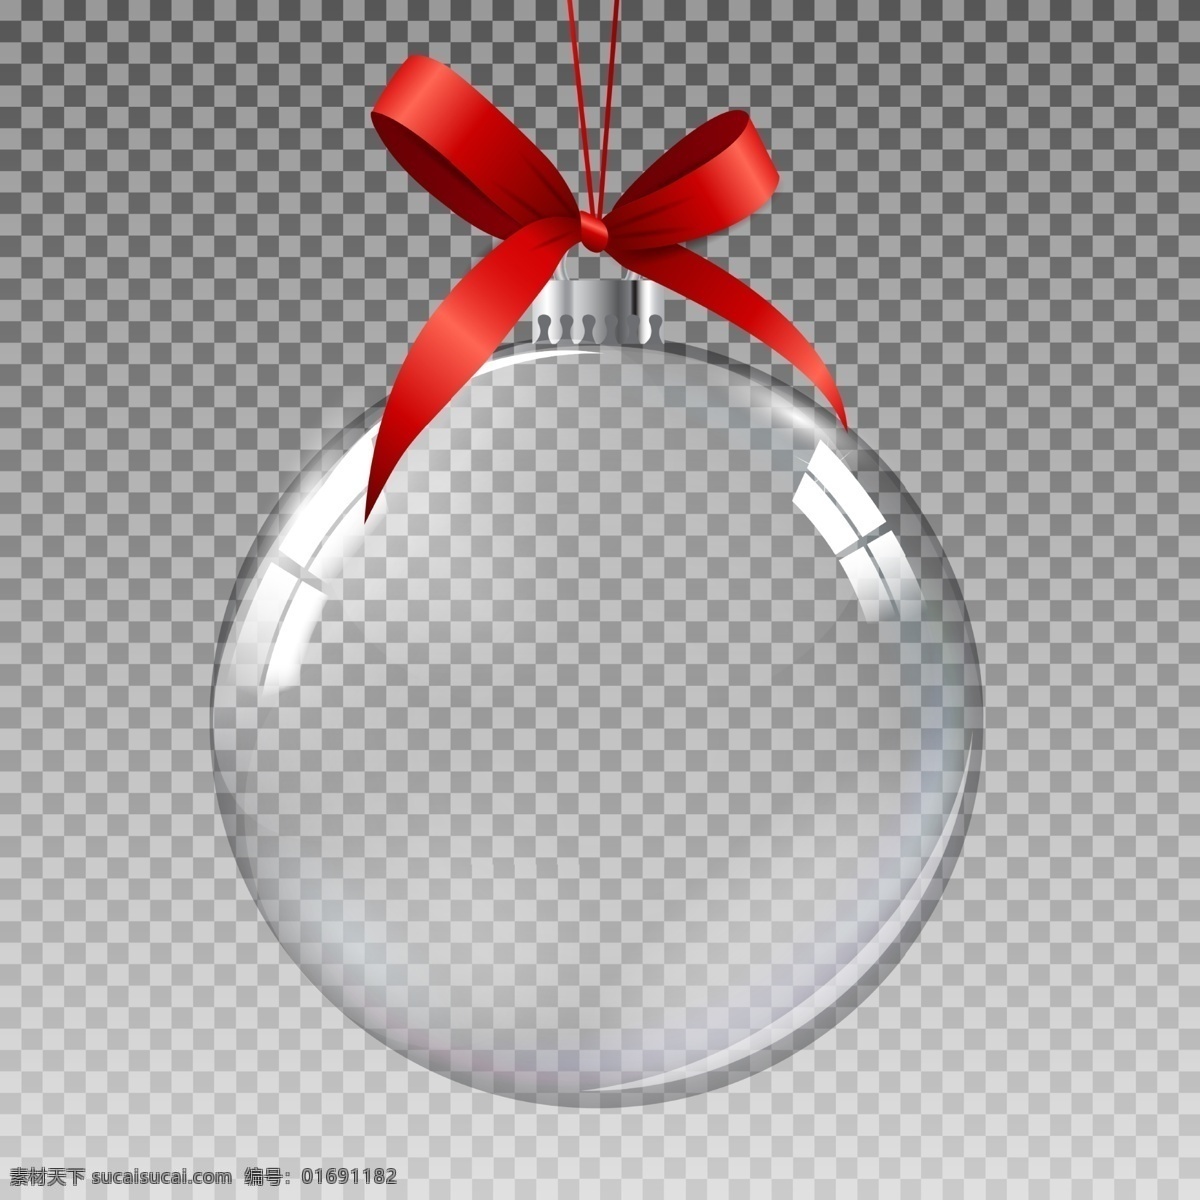 透明 圣诞球 元素 高清 红色 底纹边框 其他素材